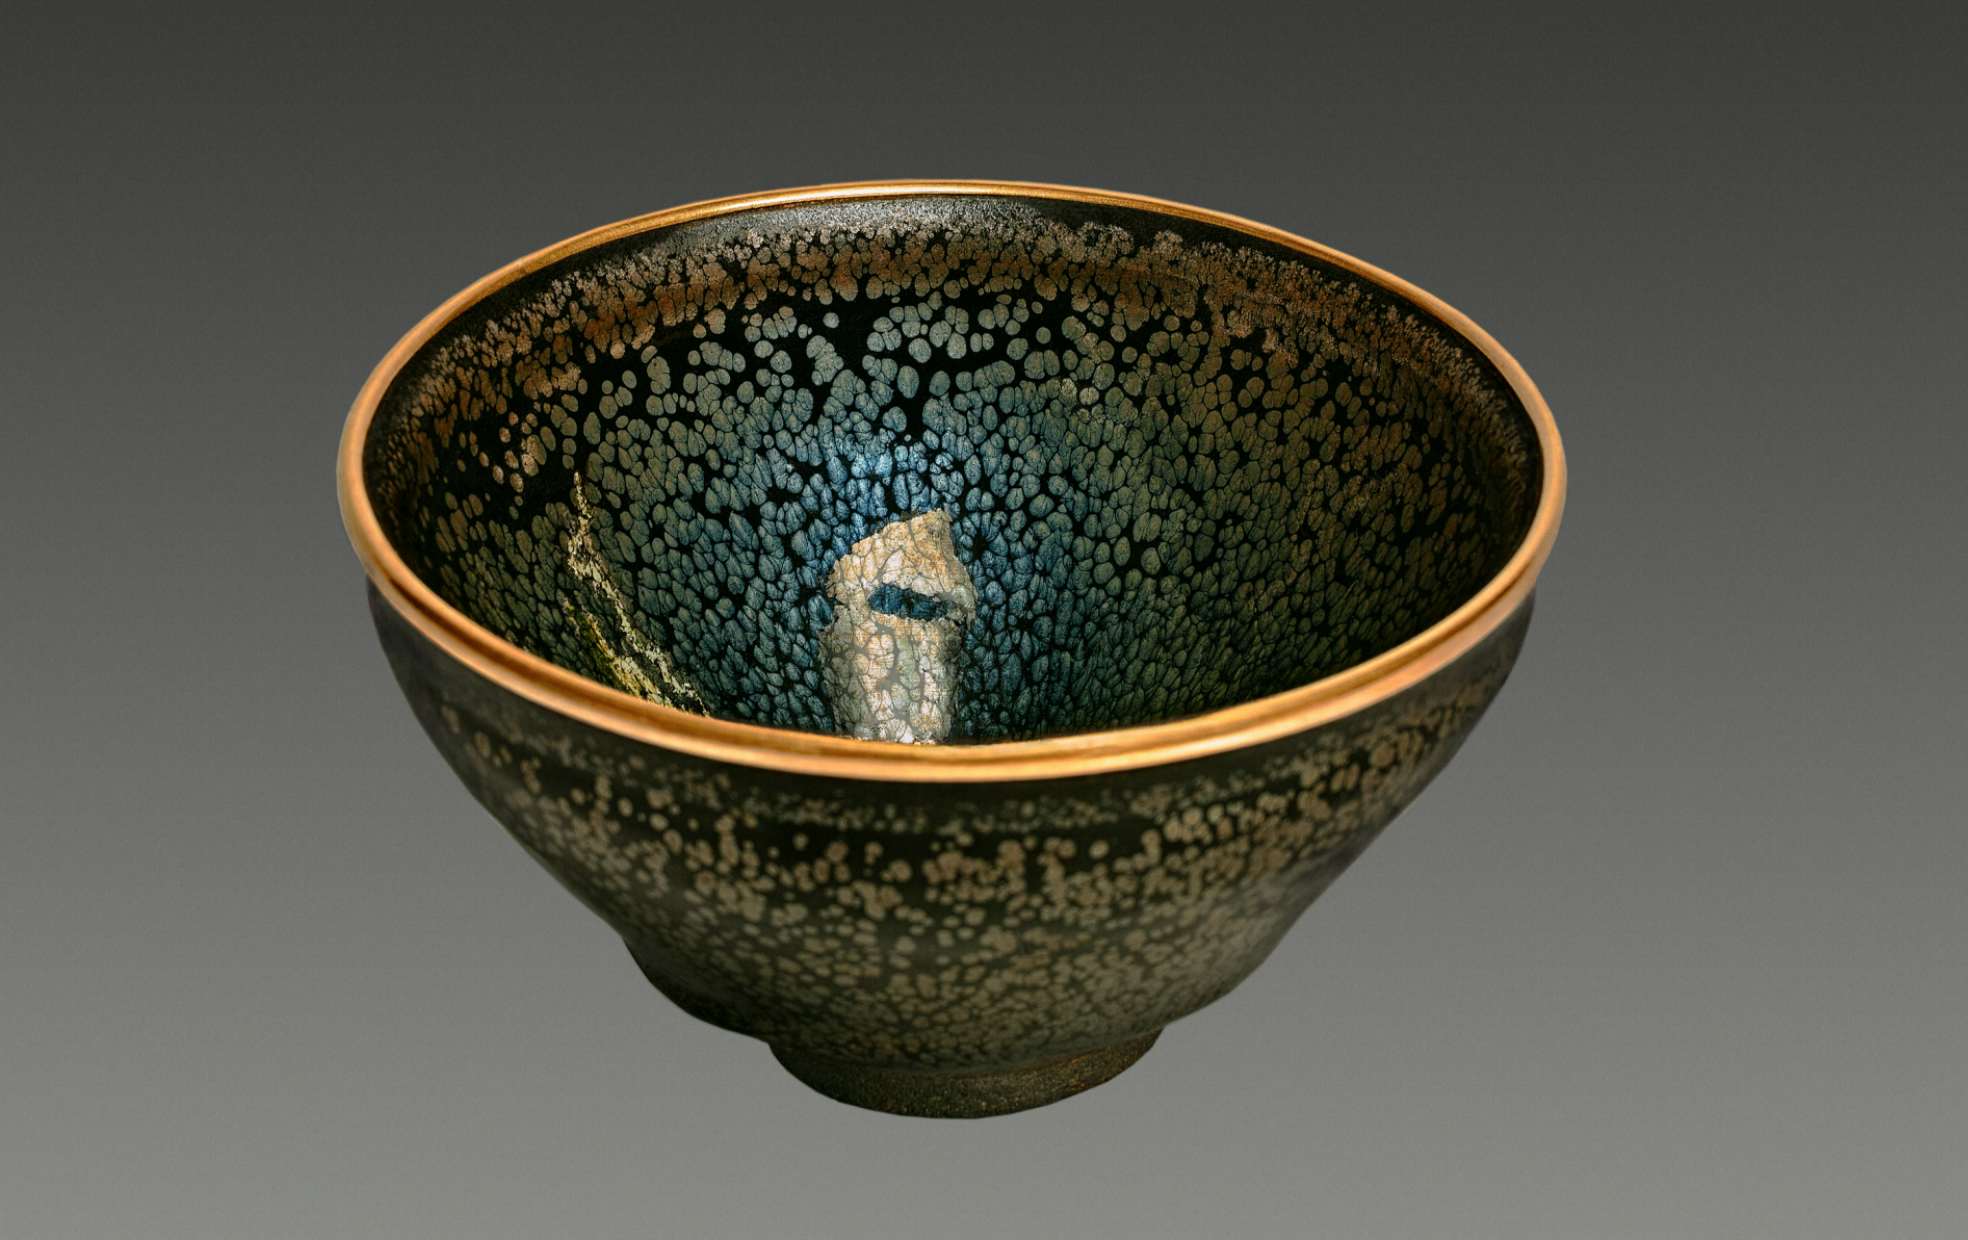 国宝《油滴天目 茶碗》もダウンロード可能。大阪市立東洋陶磁美術館が ...